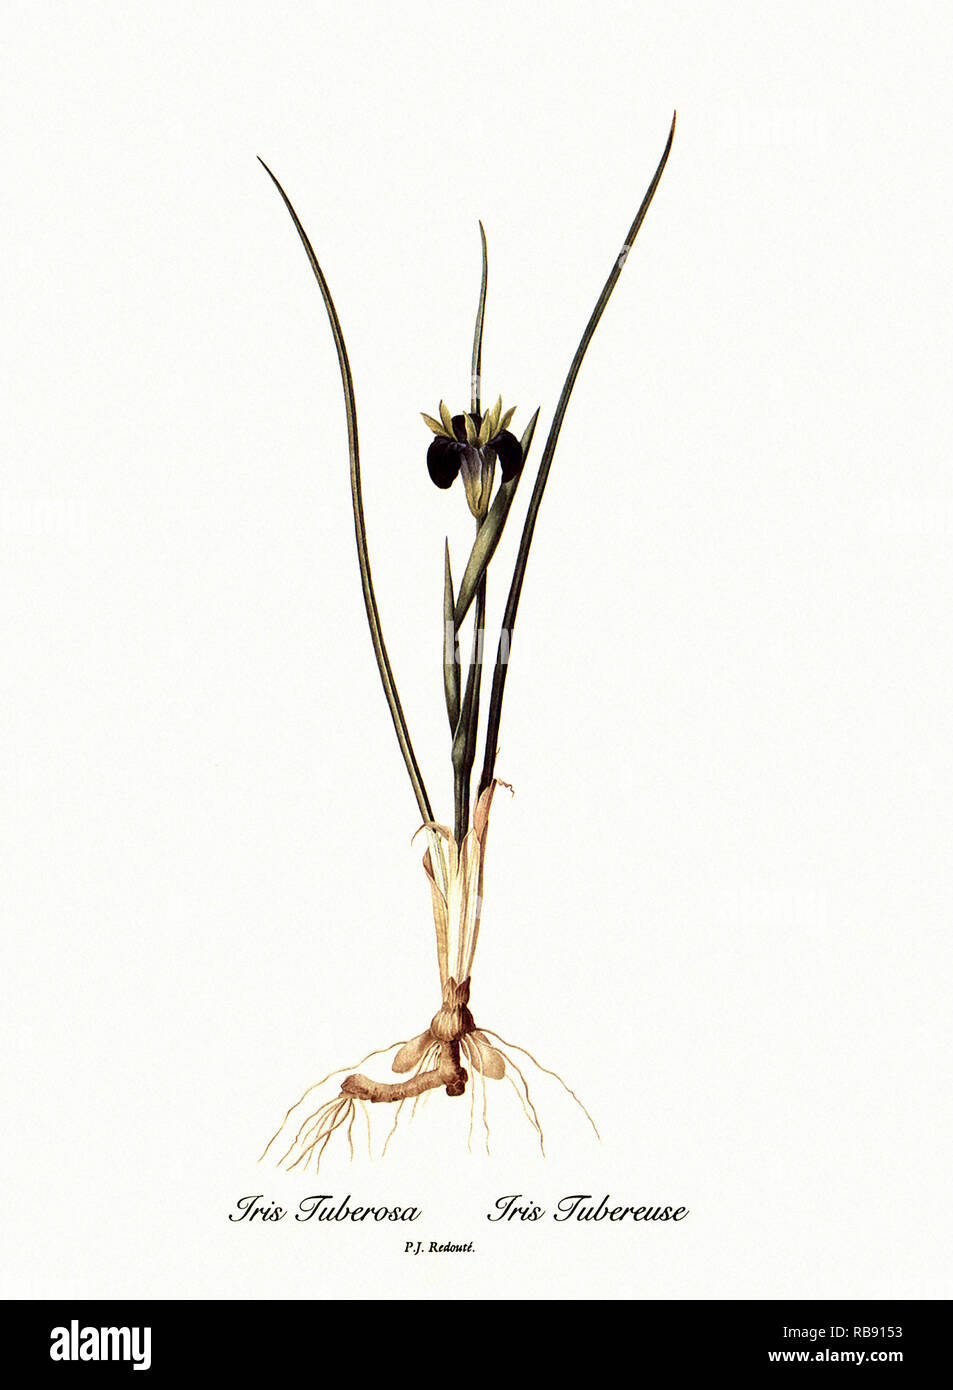 Iris Tuberosa, Iris Tubereuse Stock Photo